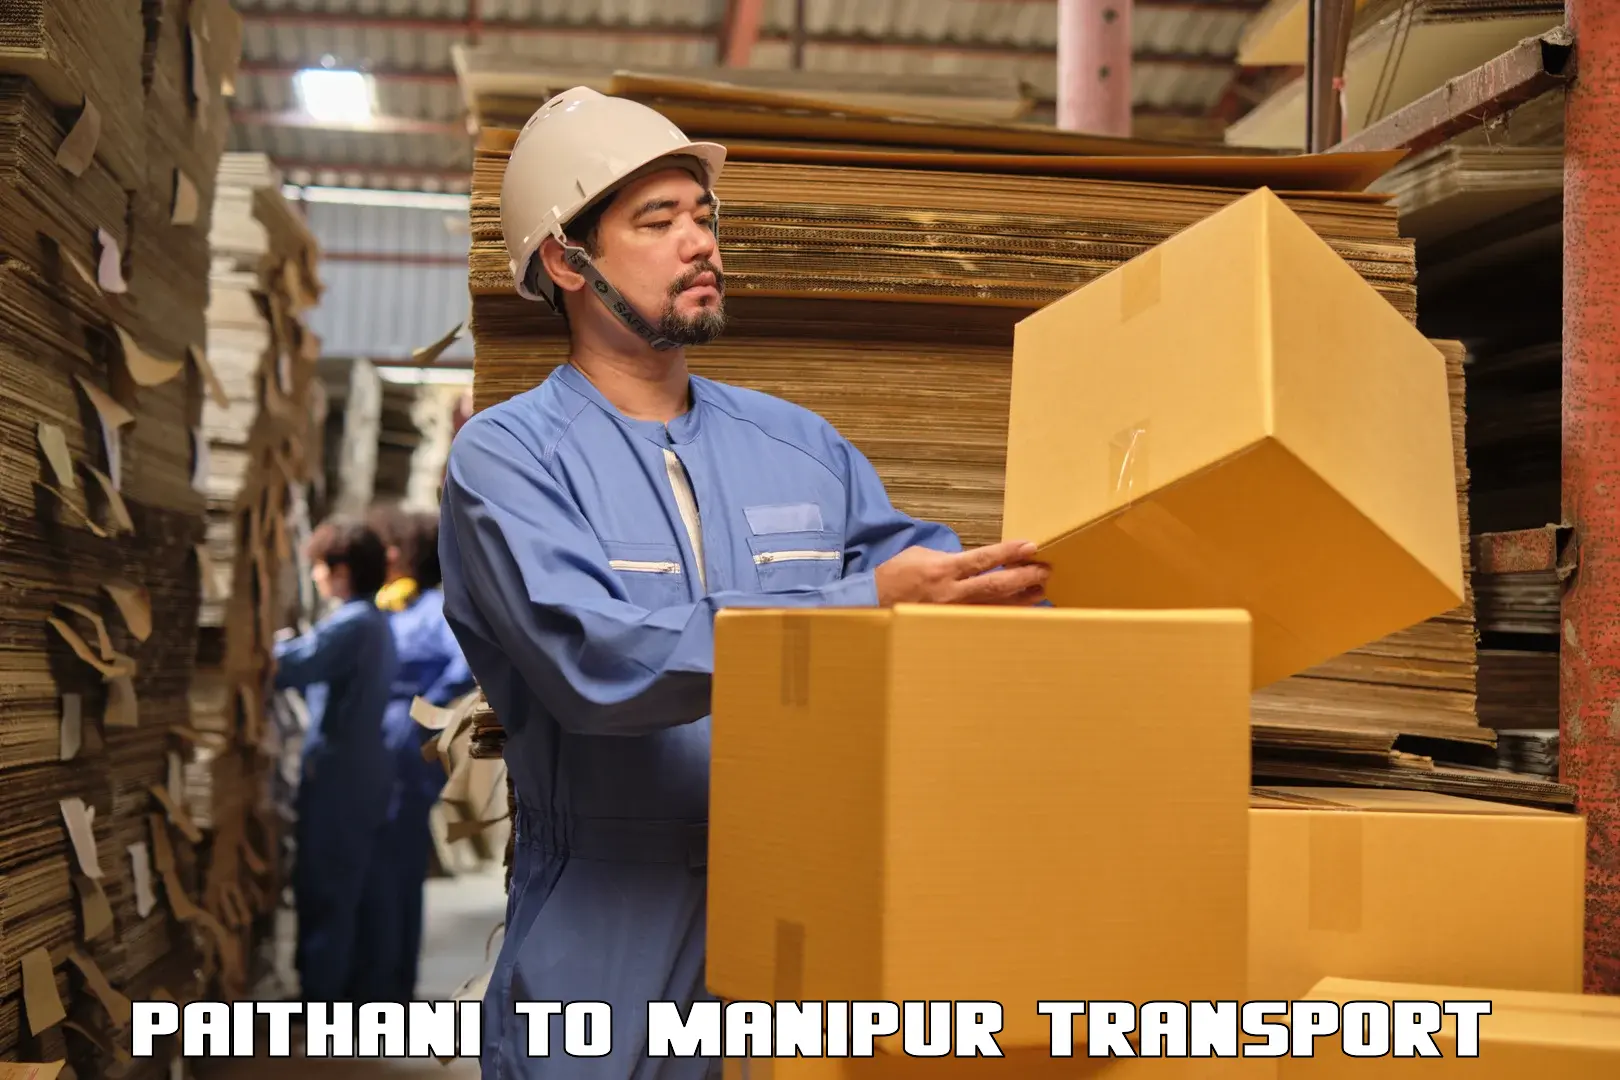 Furniture transport service Paithani to Churachandpur